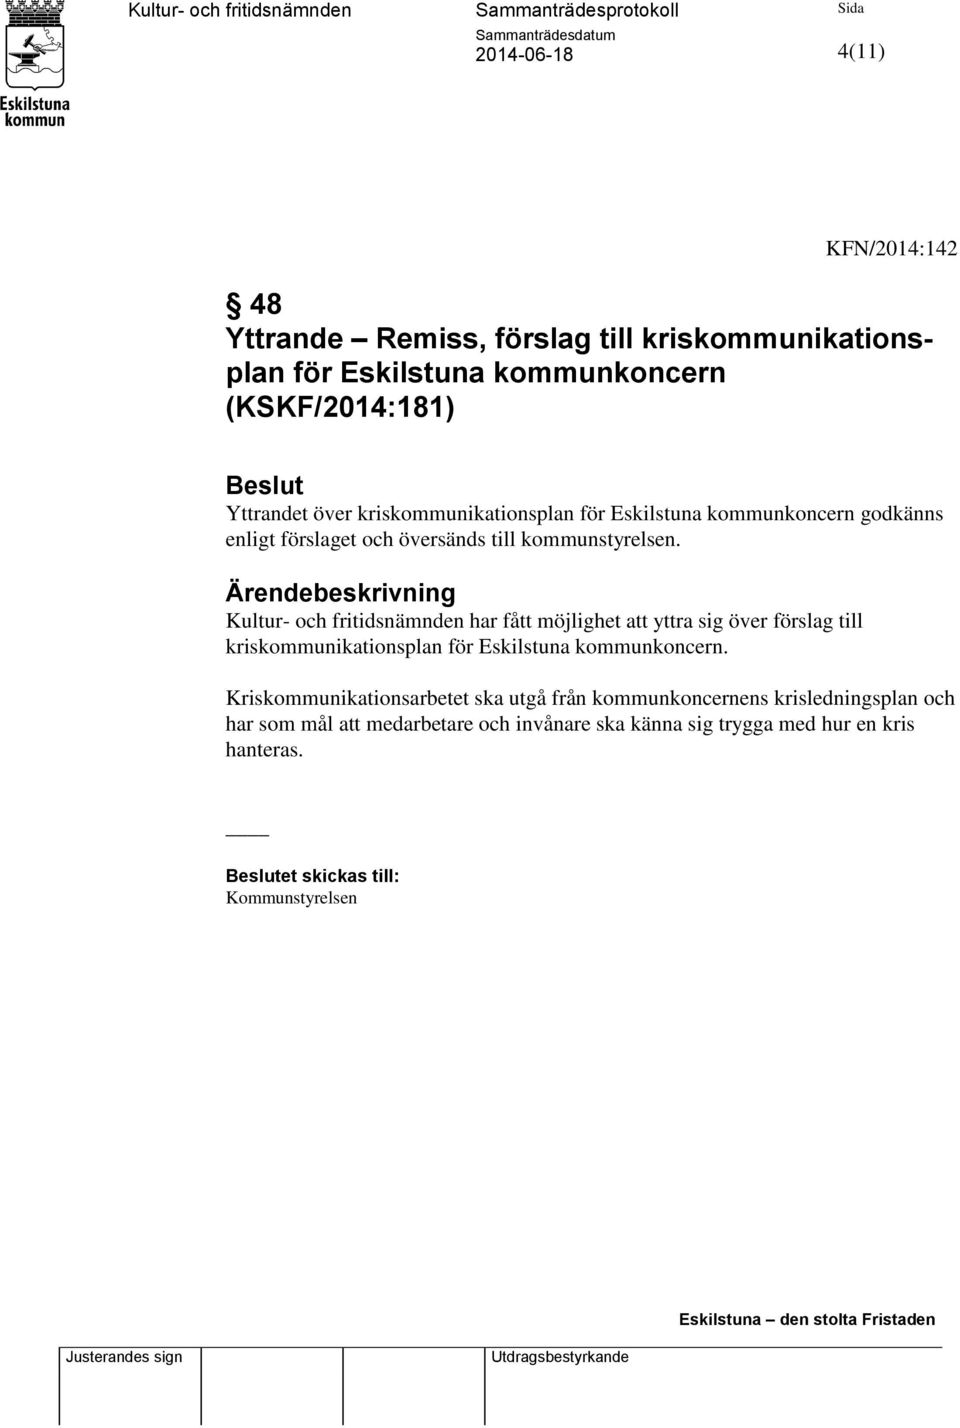 Ärendebeskrivning Kultur- och fritidsnämnden har fått möjlighet att yttra sig över förslag till kriskommunikationsplan för Eskilstuna kommunkoncern.